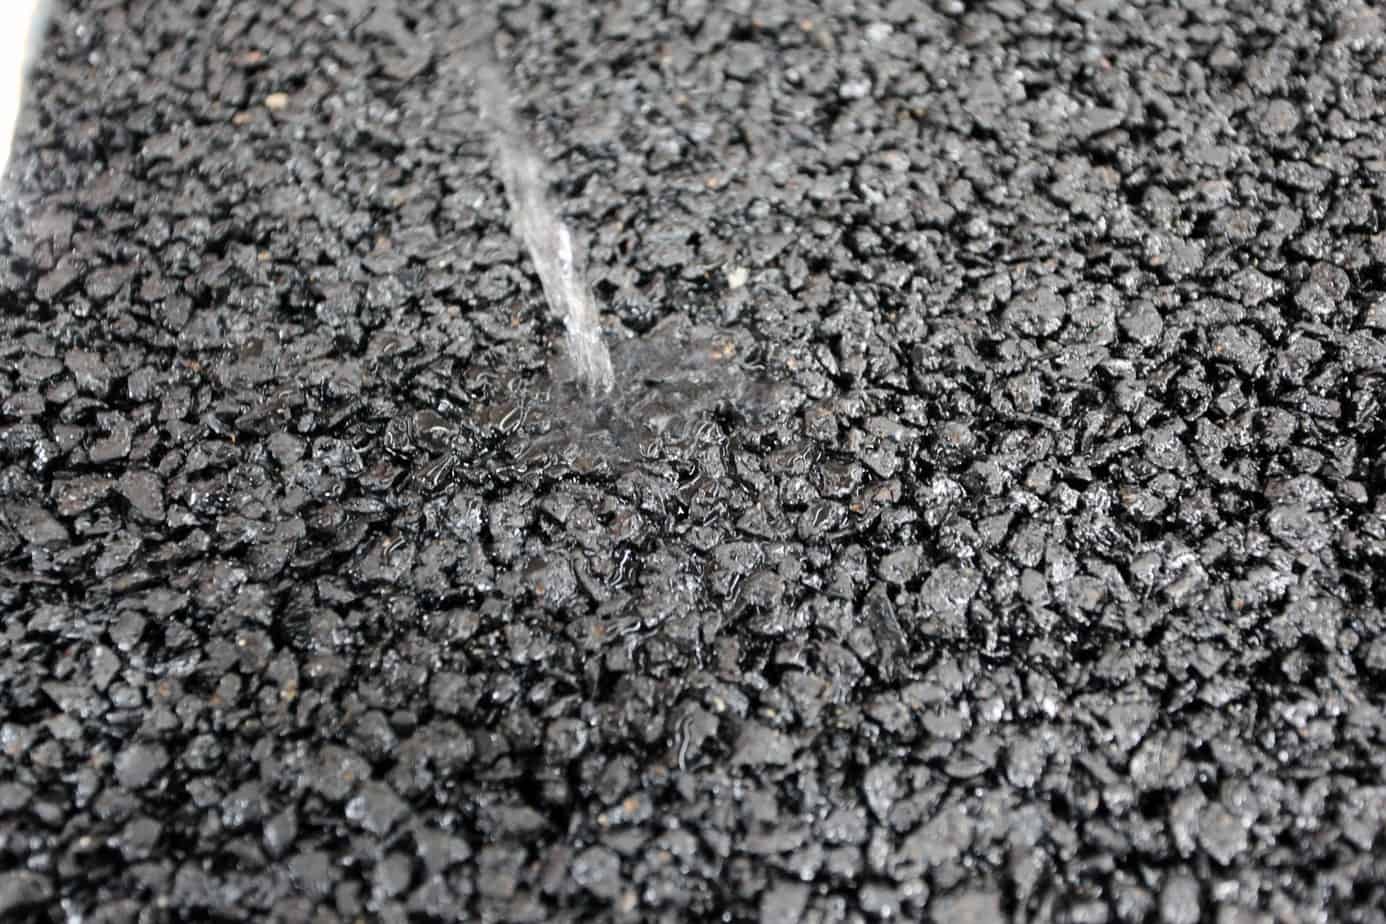 L’aggiunta di polverino di gomma da PFU al bitume per asfalti, oltre a consentire un’apprezzabile riduzione del rumore da traffico, consente di drenare meglio l’acqua, aumentando la sicurezza per gli utenti e prevenendo la comparsa di danni stagionali come crepe e fessurazioni